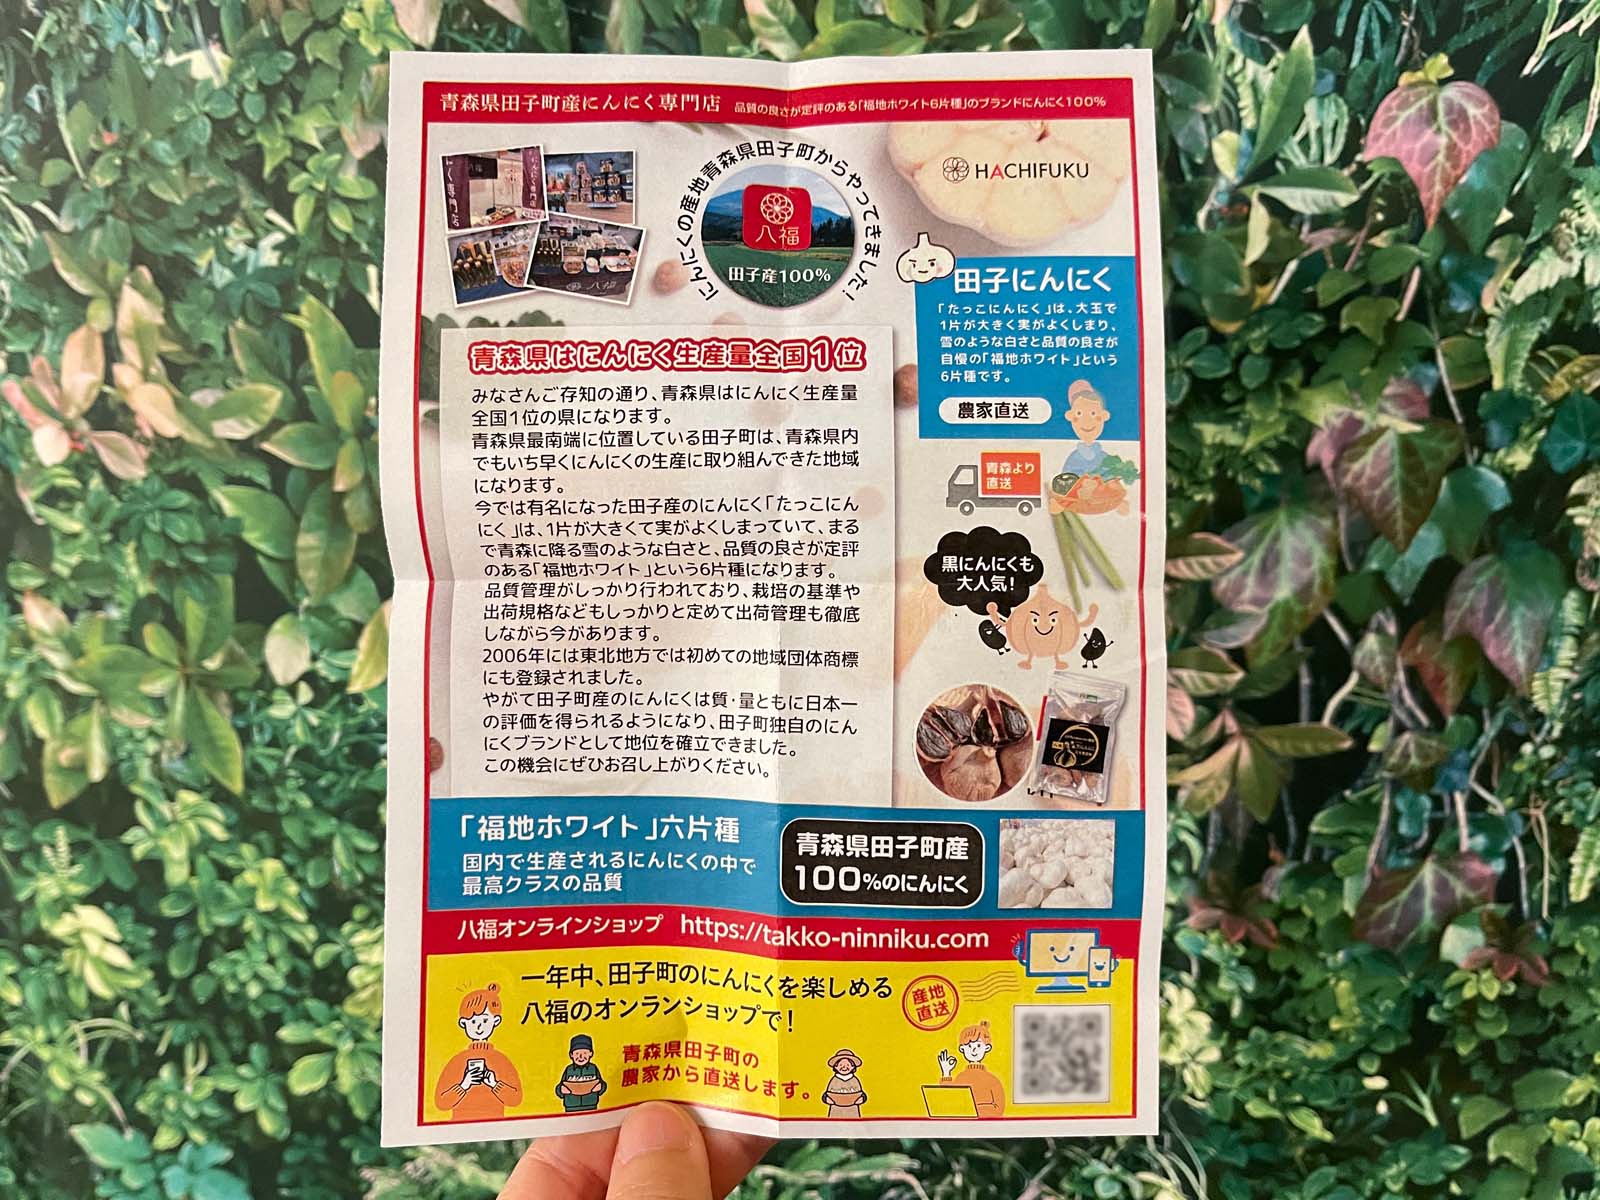 青森県田子町産にんにく専門店「八福」のフライドガーリックと大きなニンニク食べたよ！